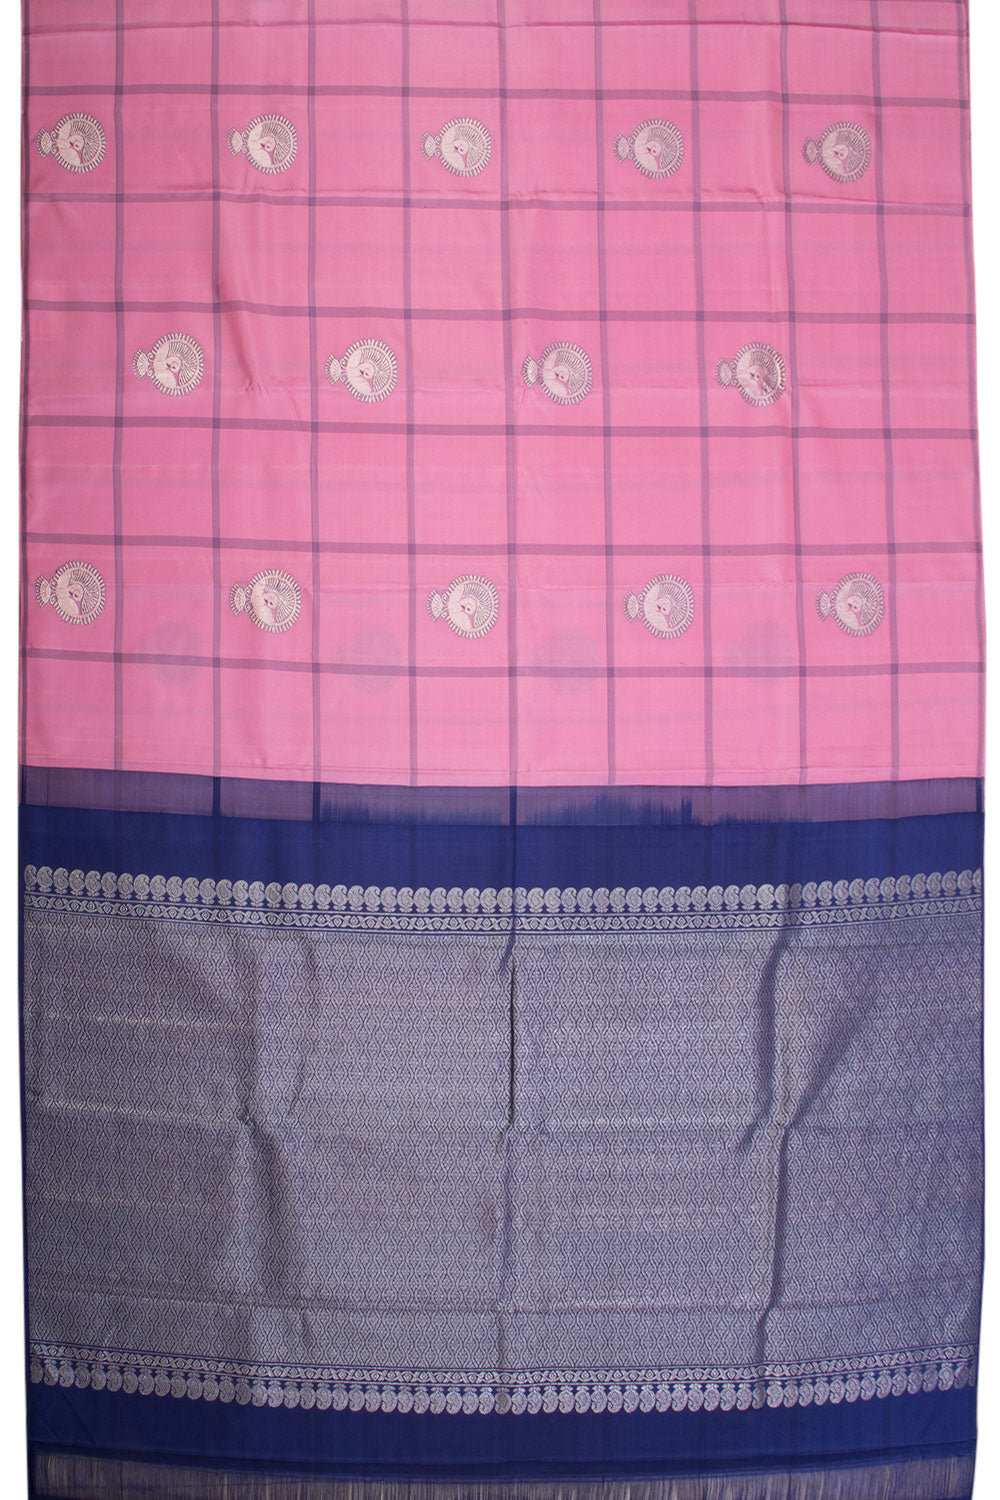 Hot Pink Handloom Kanjivaram silk saree - Avishya